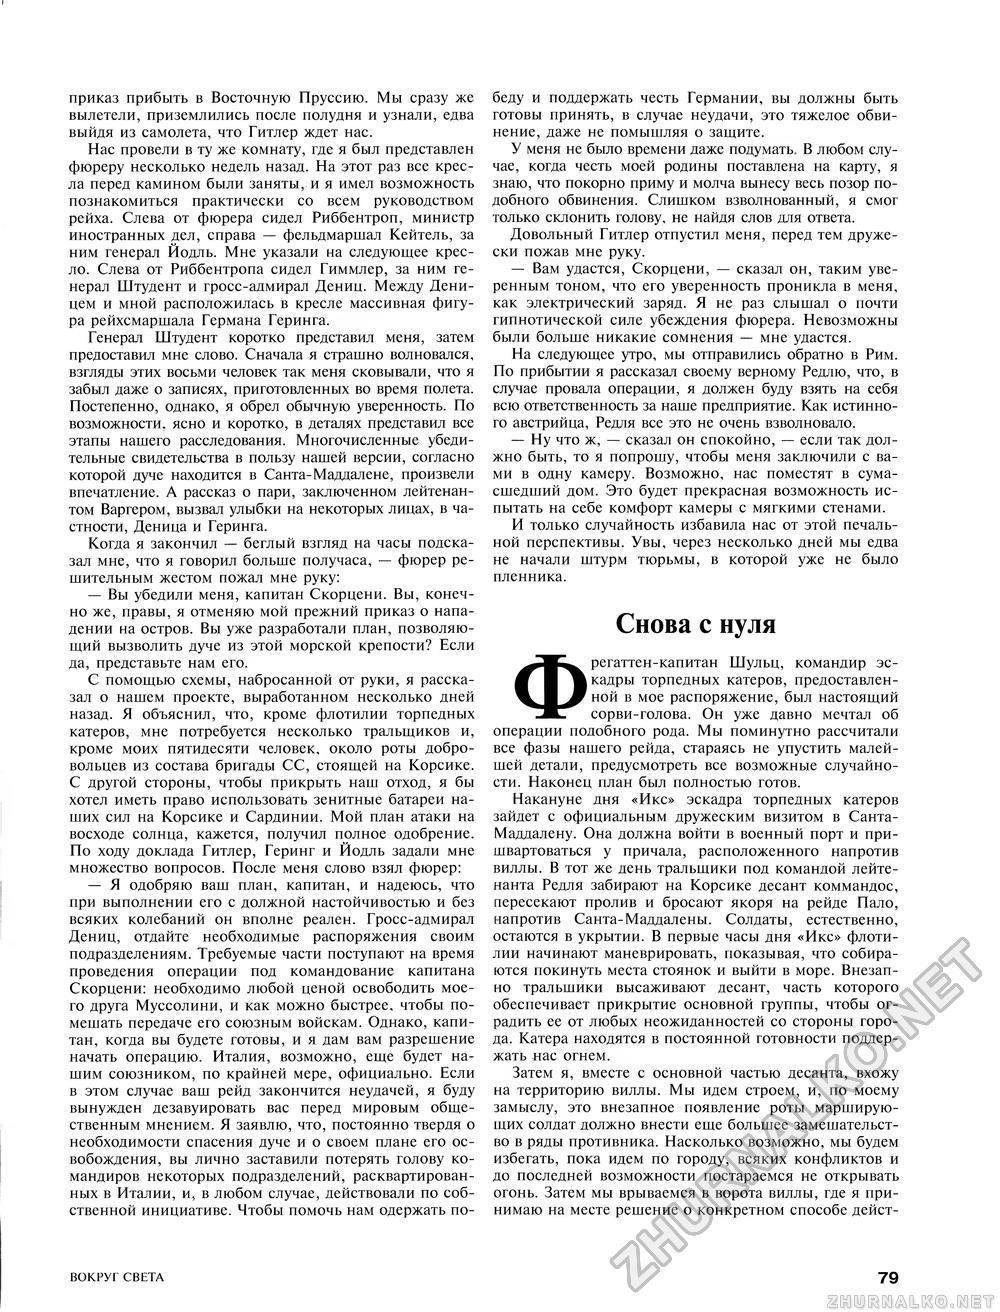 Вокруг света 1996-01, страница 68